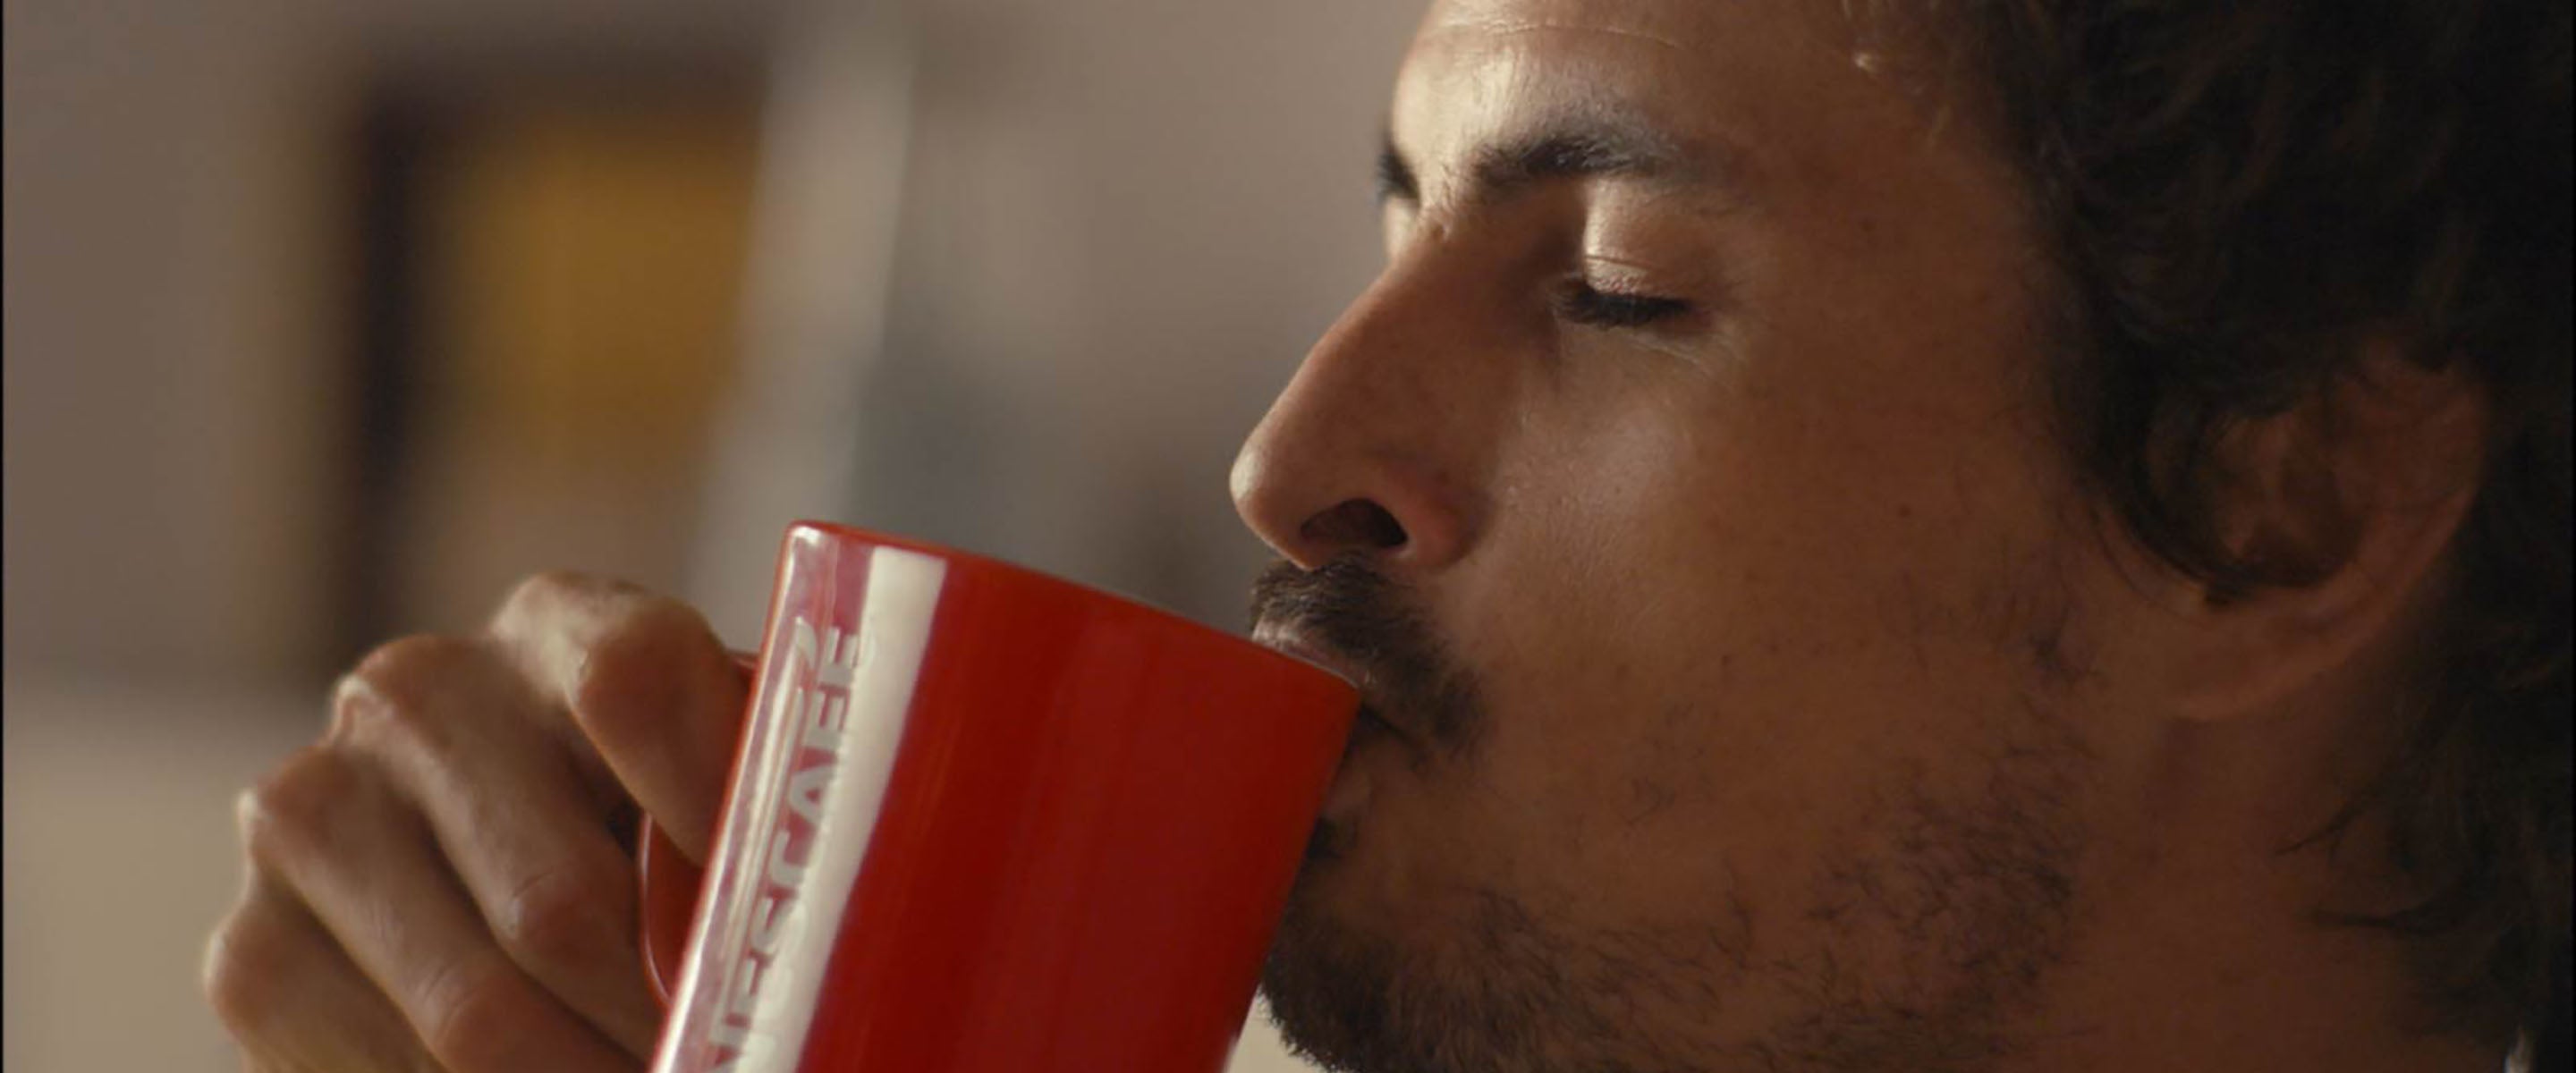 Muškarac uživa u kavi NESCAFÉ Classic s crvenom šalicom u ruci